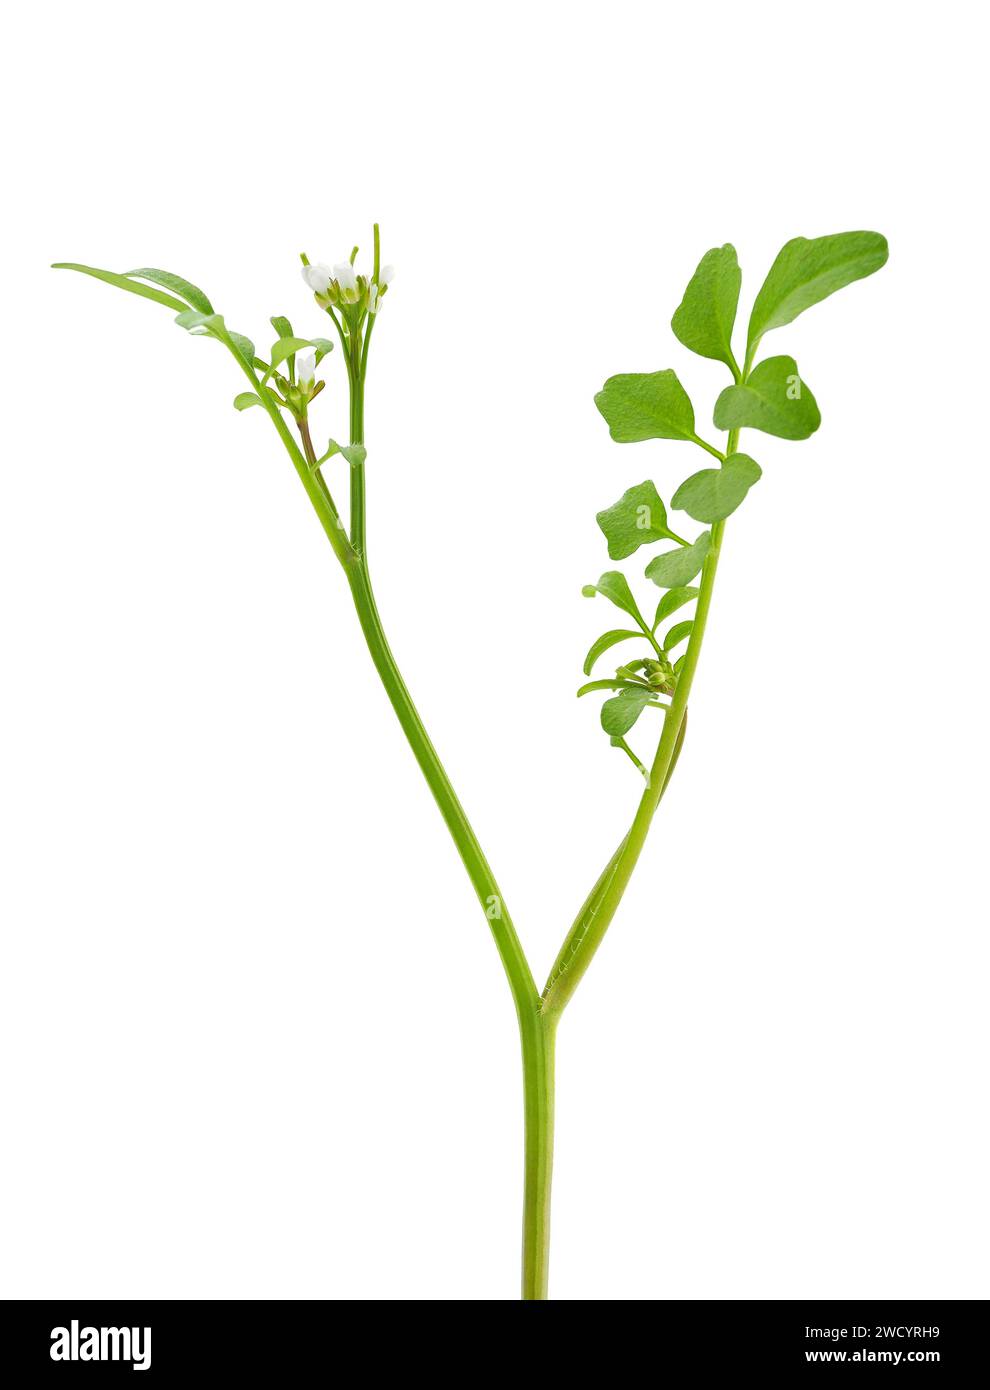 Wavy bitter-cress plant isolated on white background, Cardamine flexuosa Stock Photo